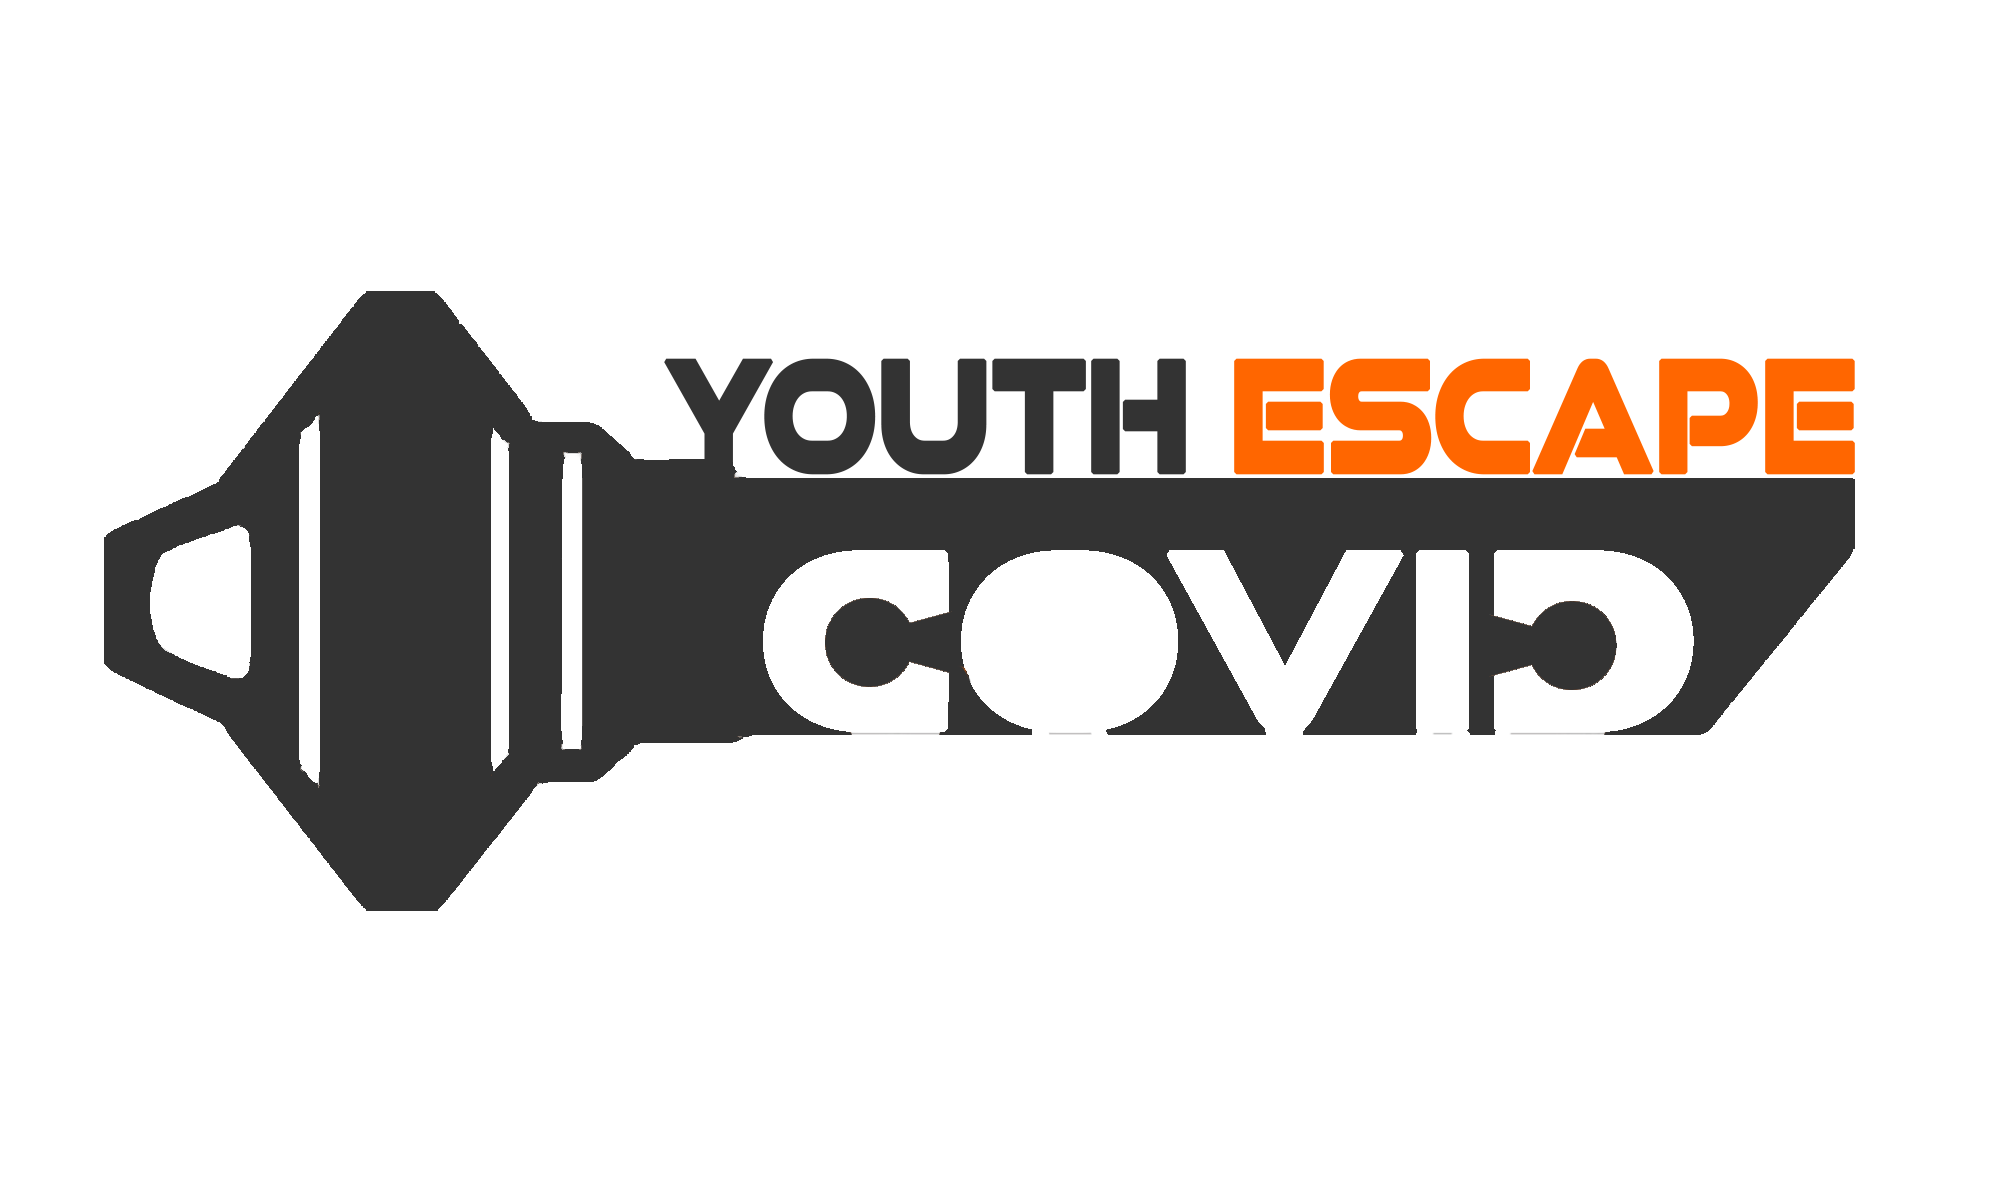 Formation sur les escape games pédagogiques dans le cadre du projet Youth Escape COVID